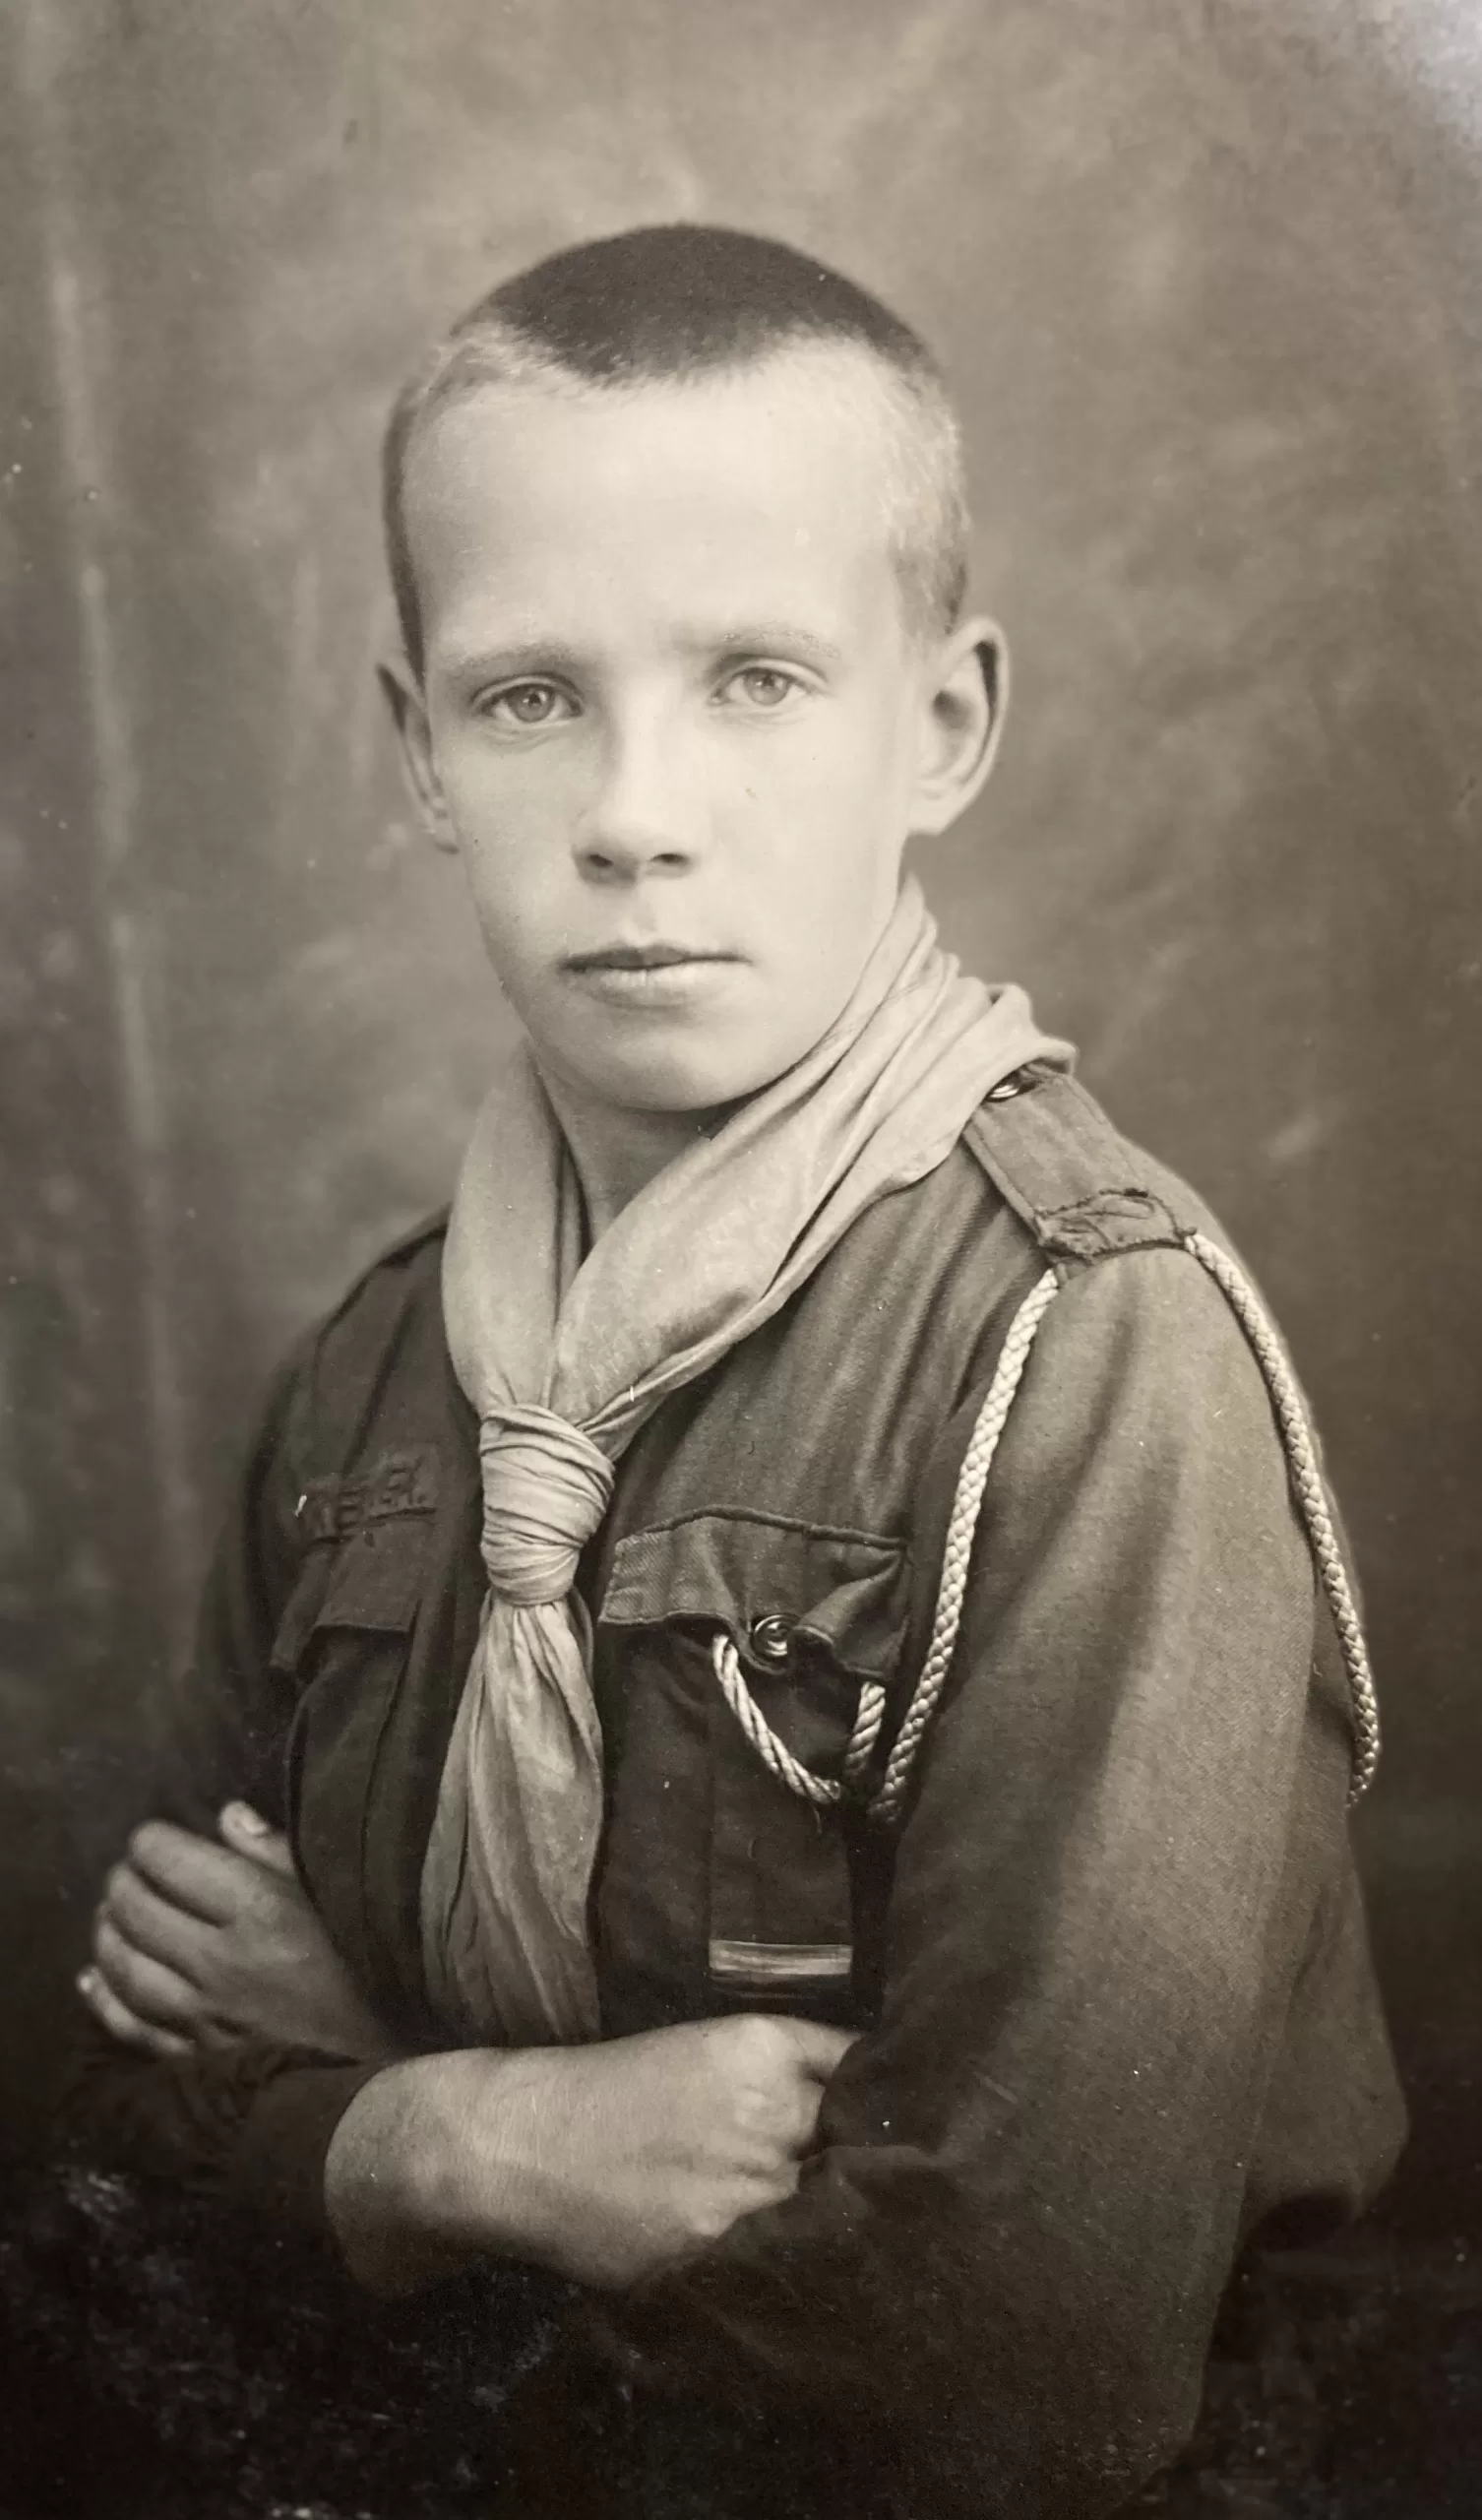 Jonas Grudzinskas su skauto uniforma 1926 m. Alfonso Survilos / Grudzinskų giminės archyvo nuotrauka